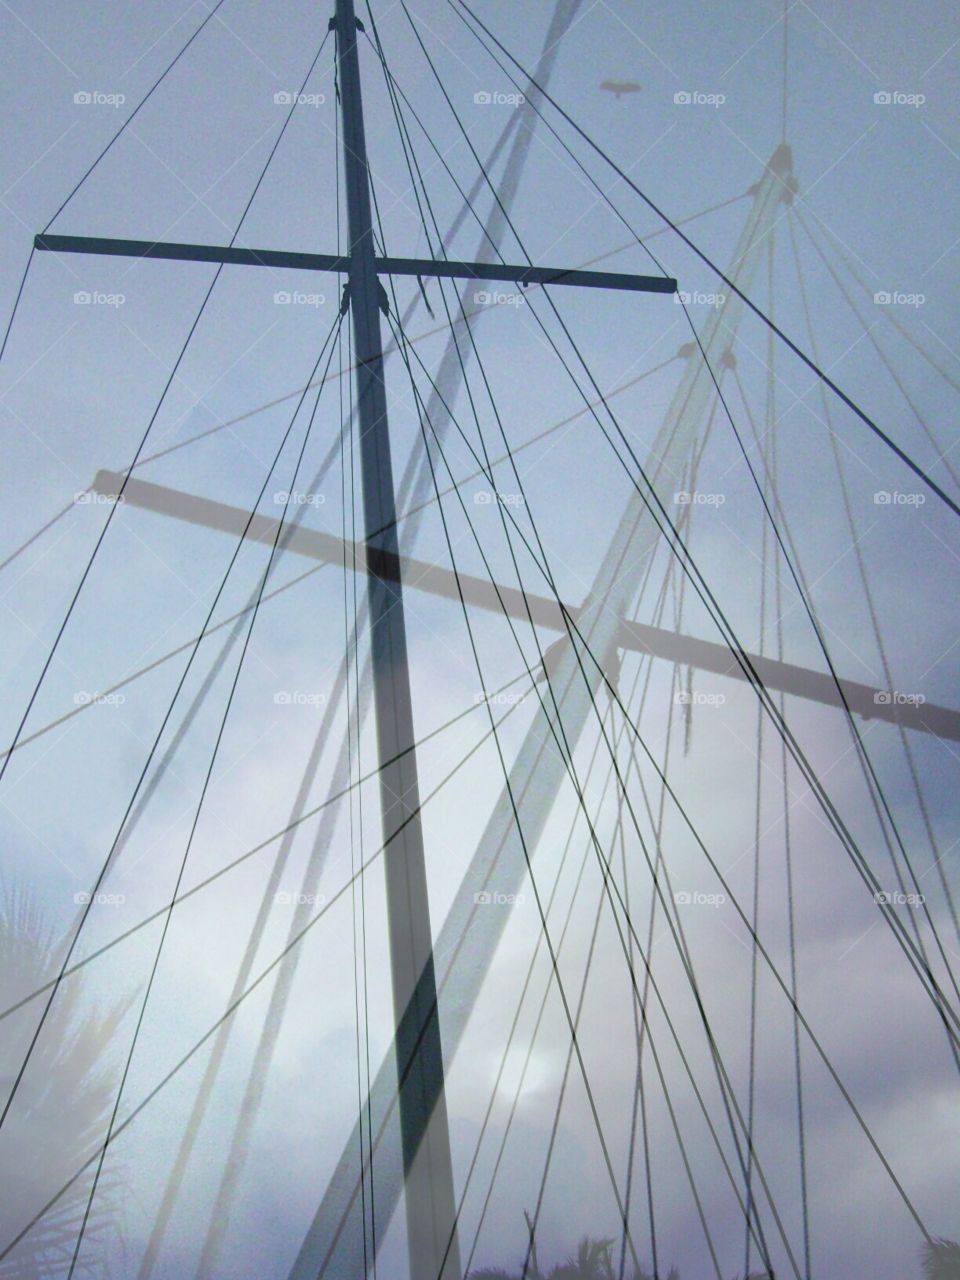 sailboat masts. sailboat masts